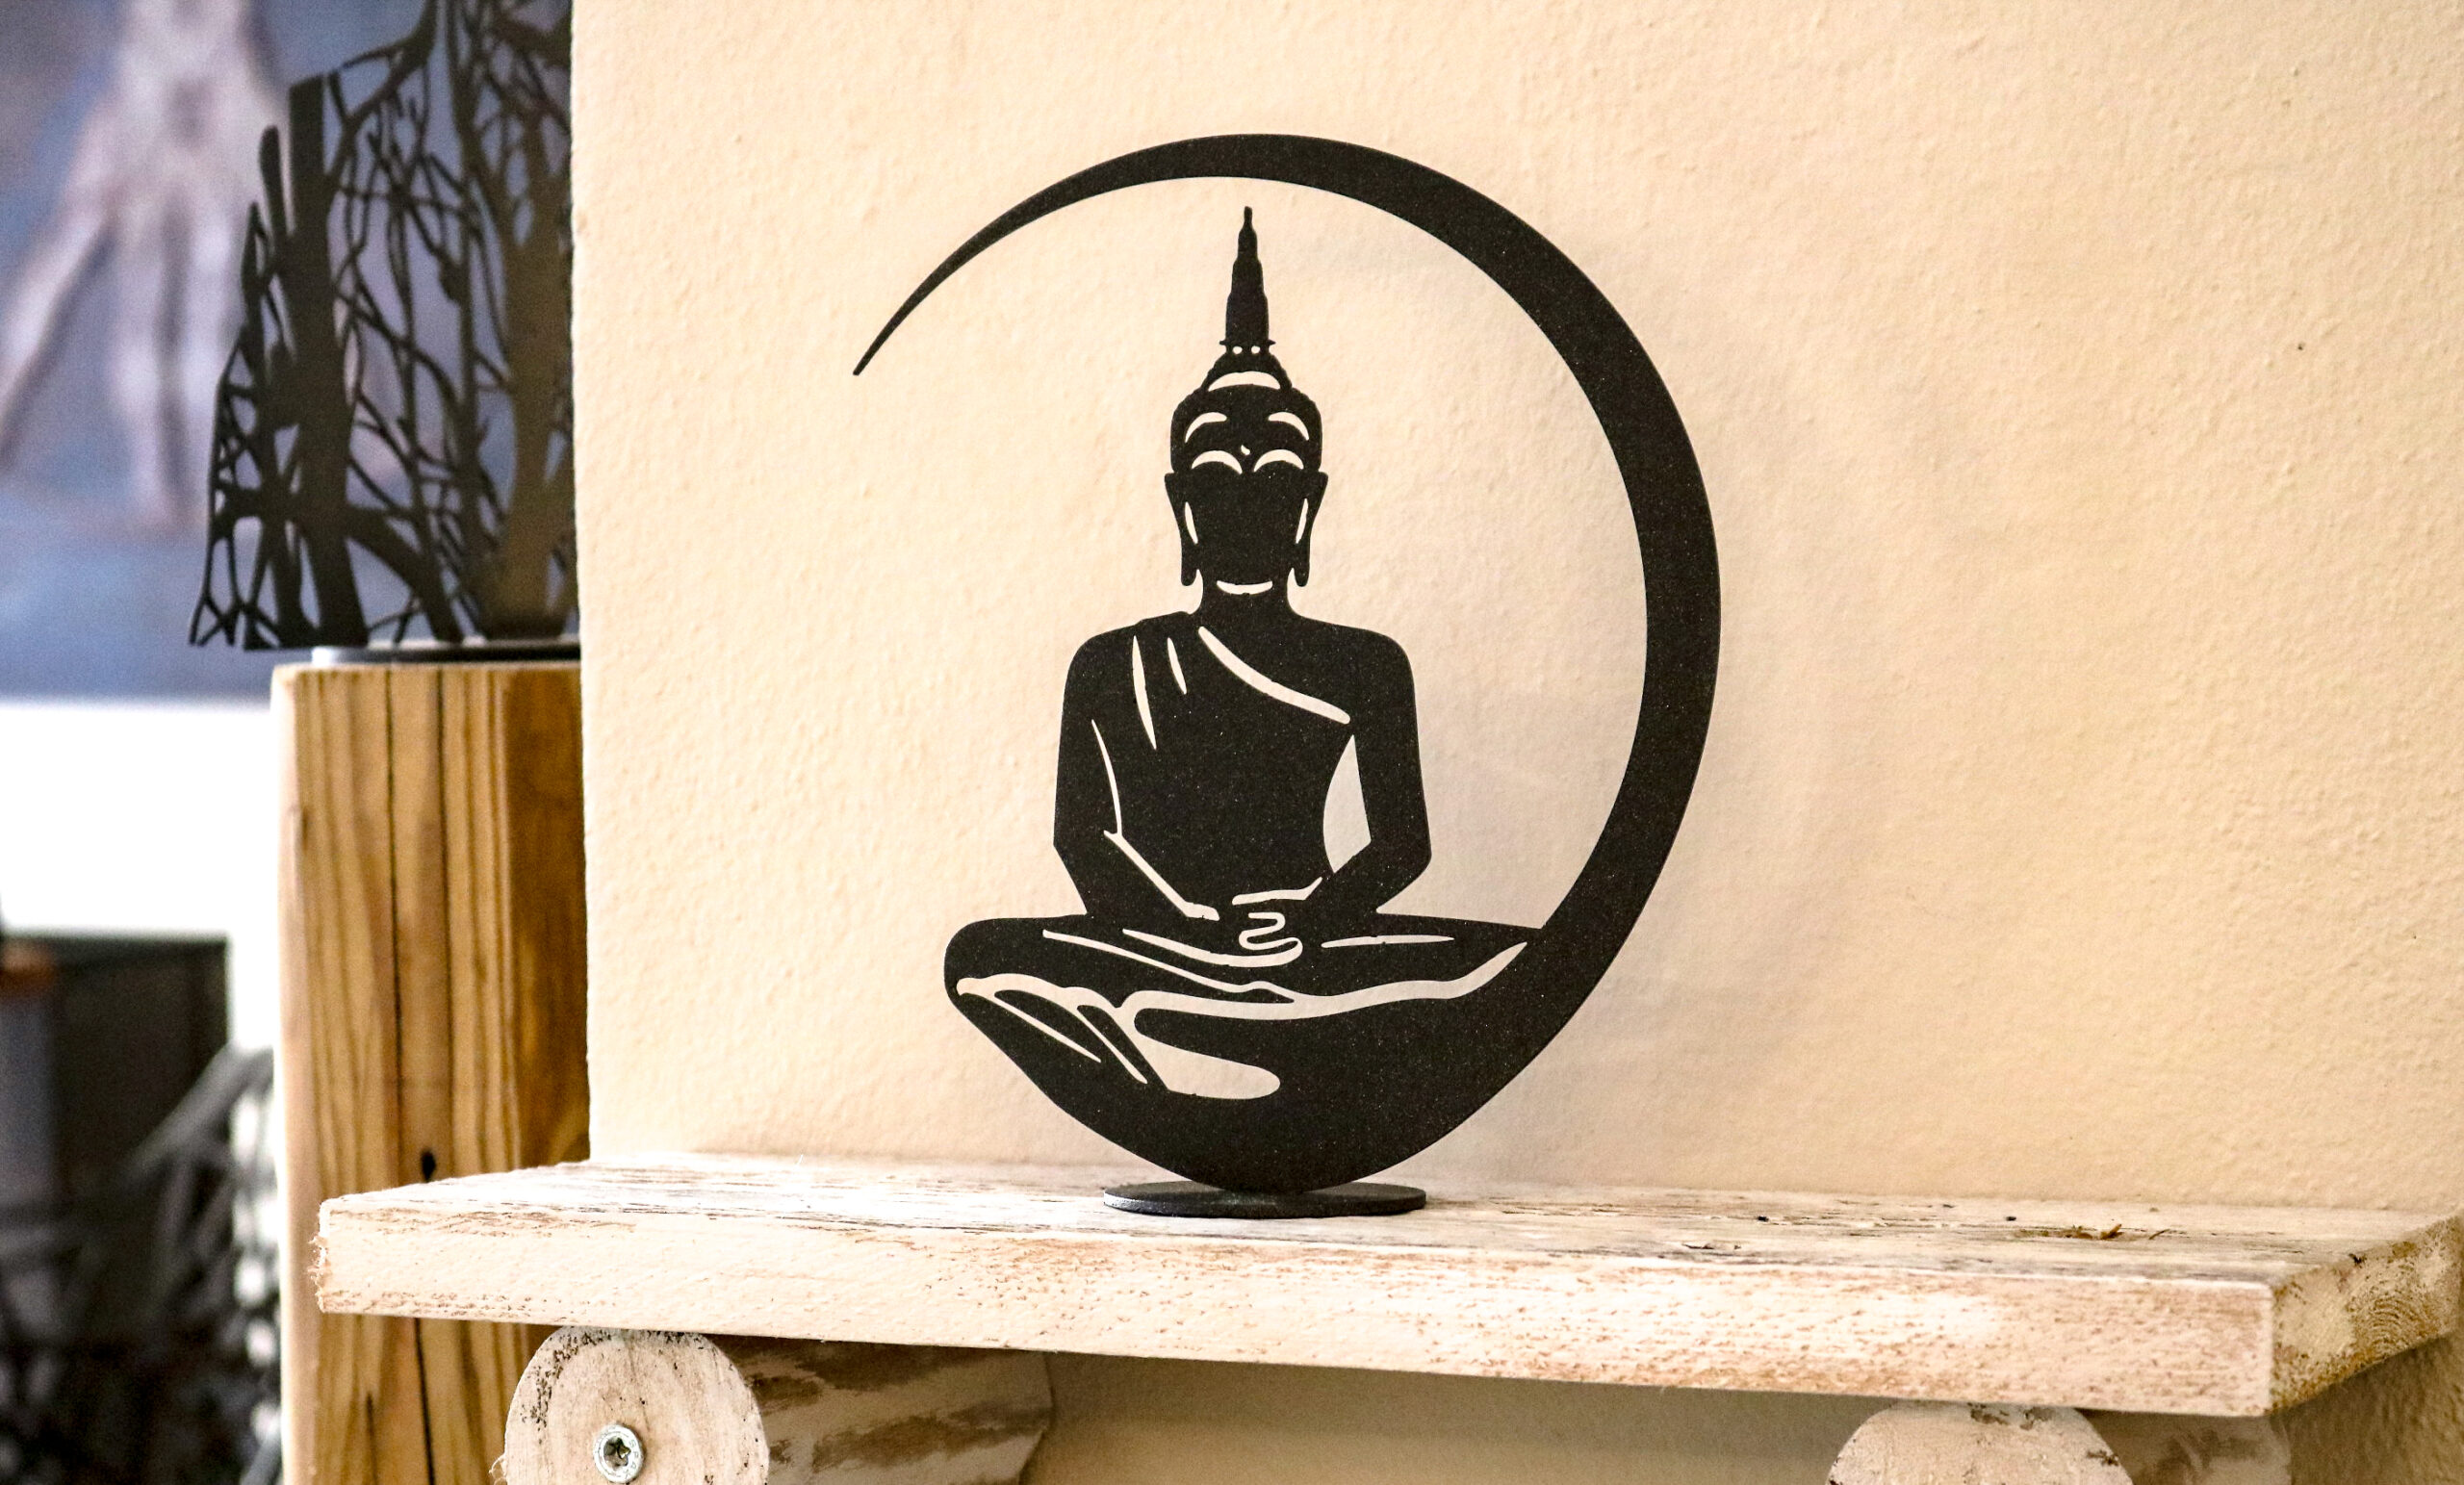 meditierender Buddha